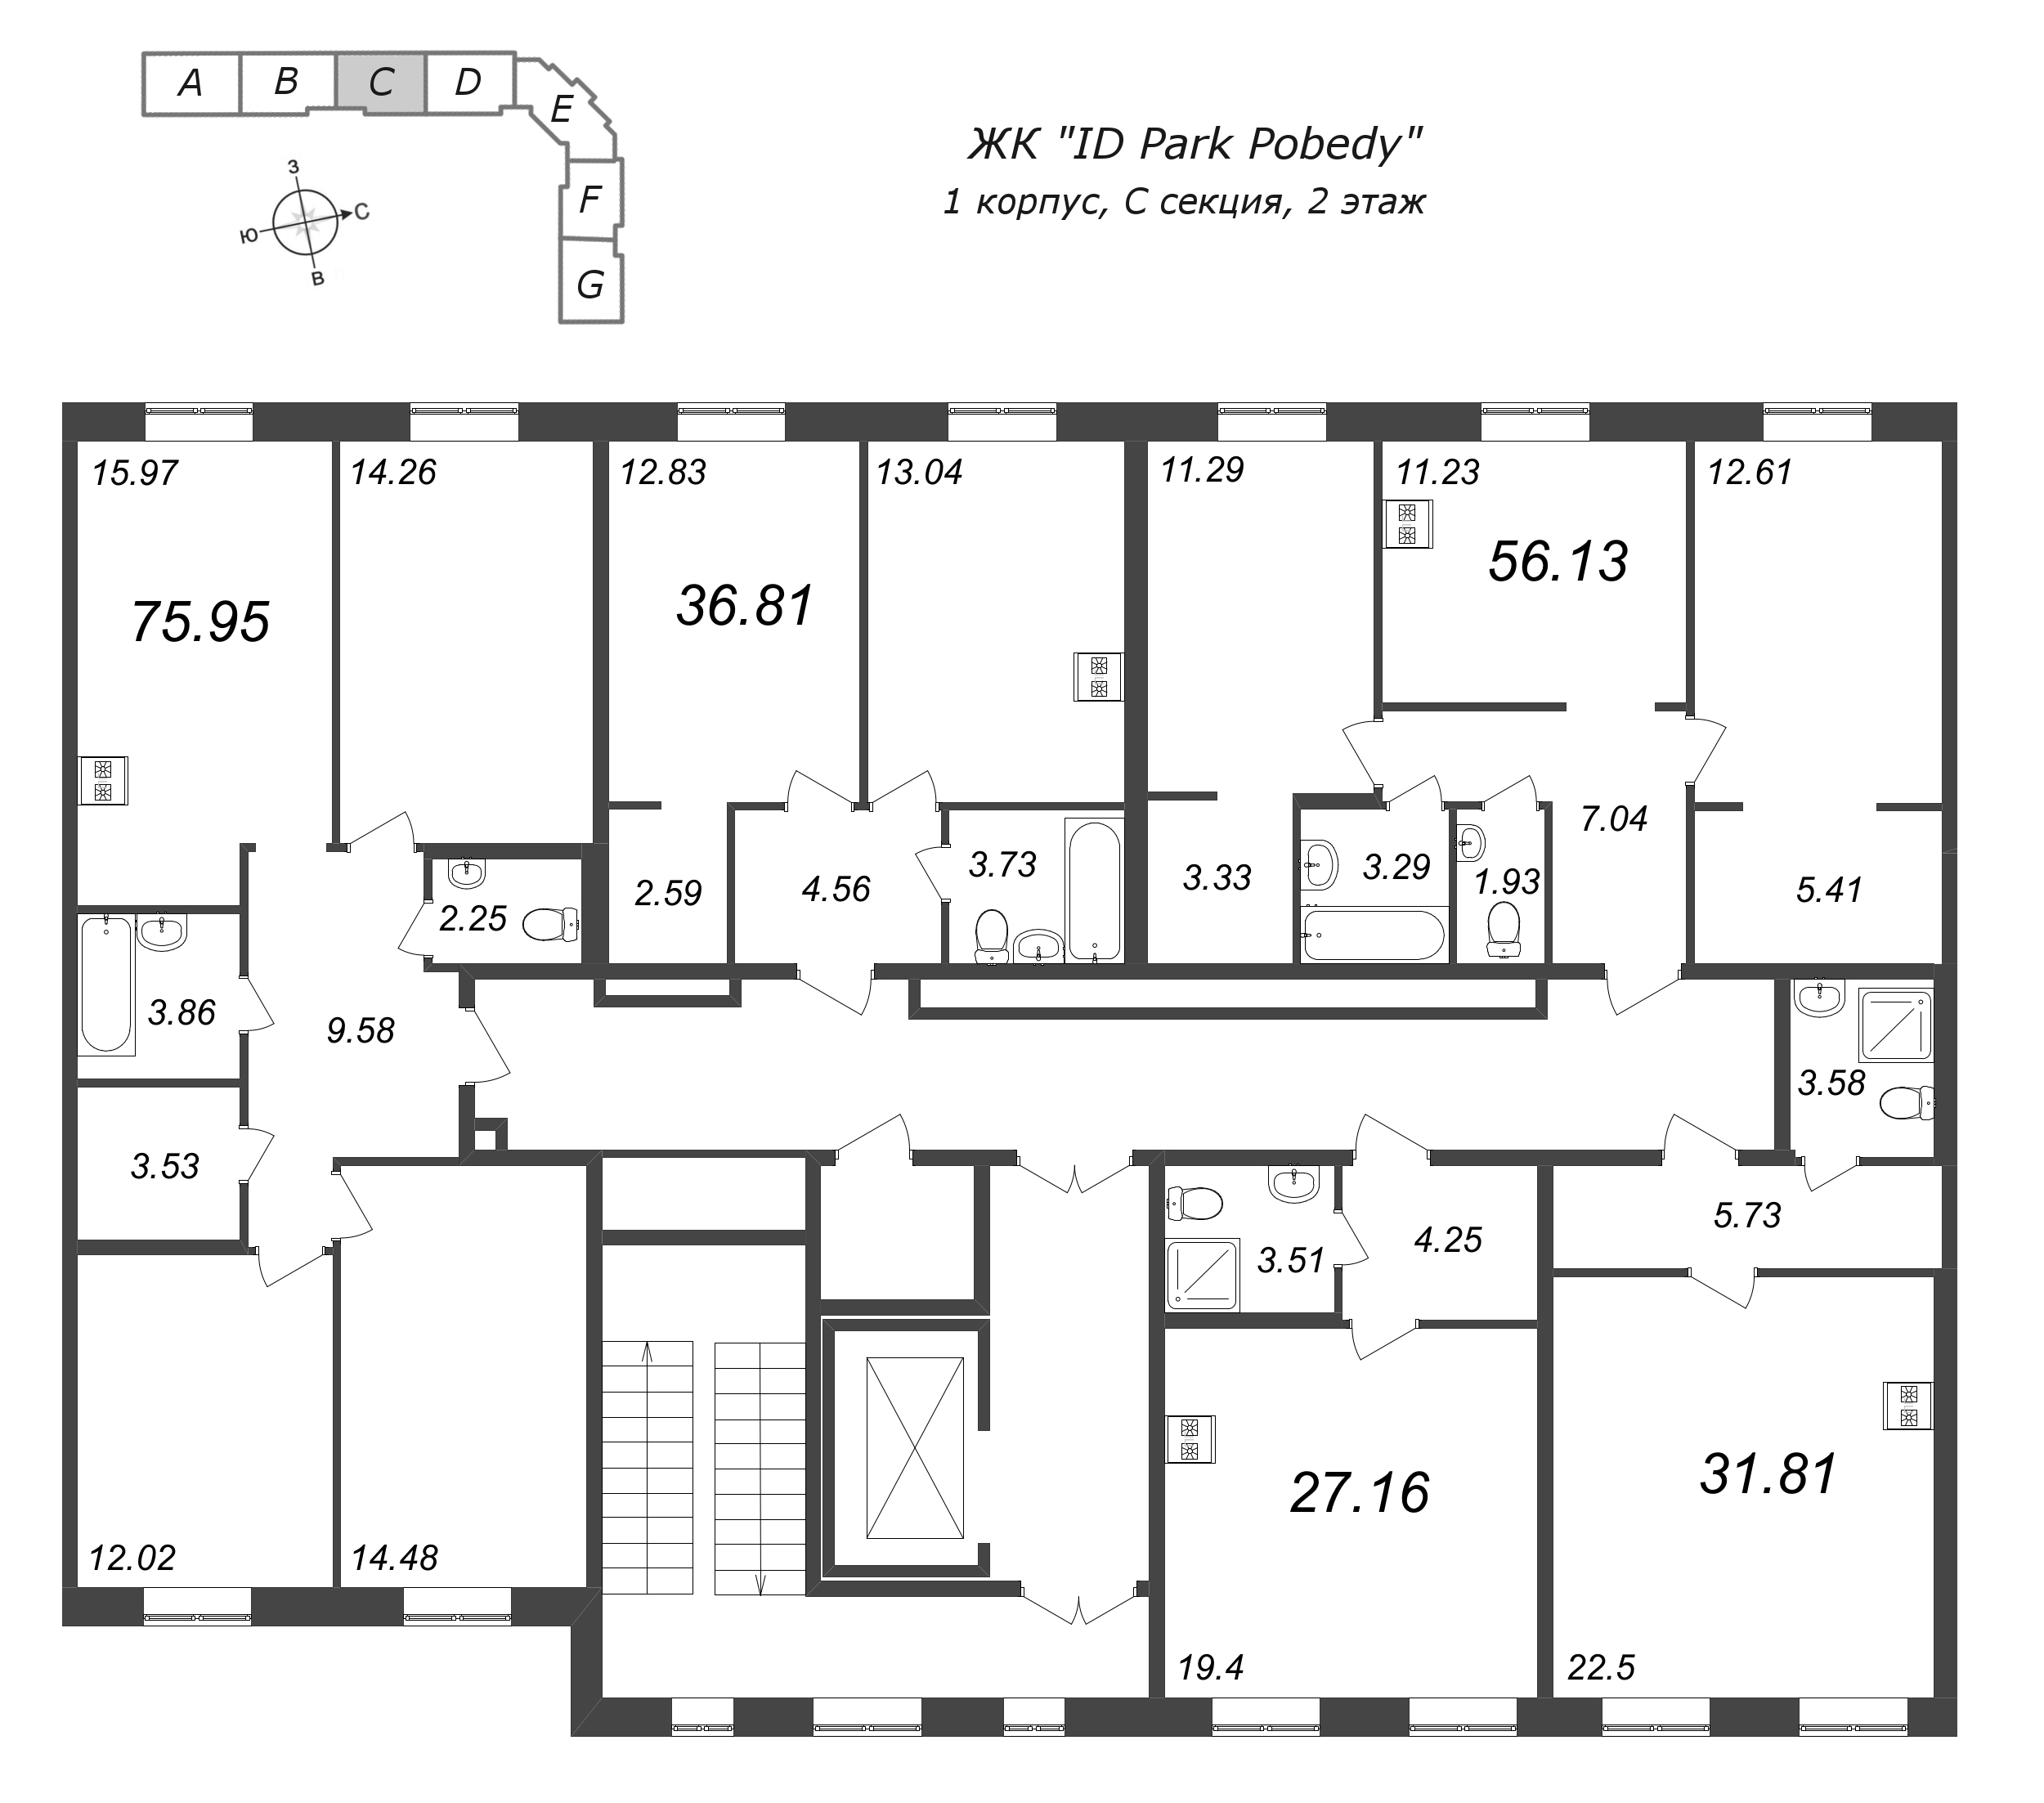 3-комнатная квартира, 75.95 м² в ЖК "ID Park Pobedy" - планировка этажа